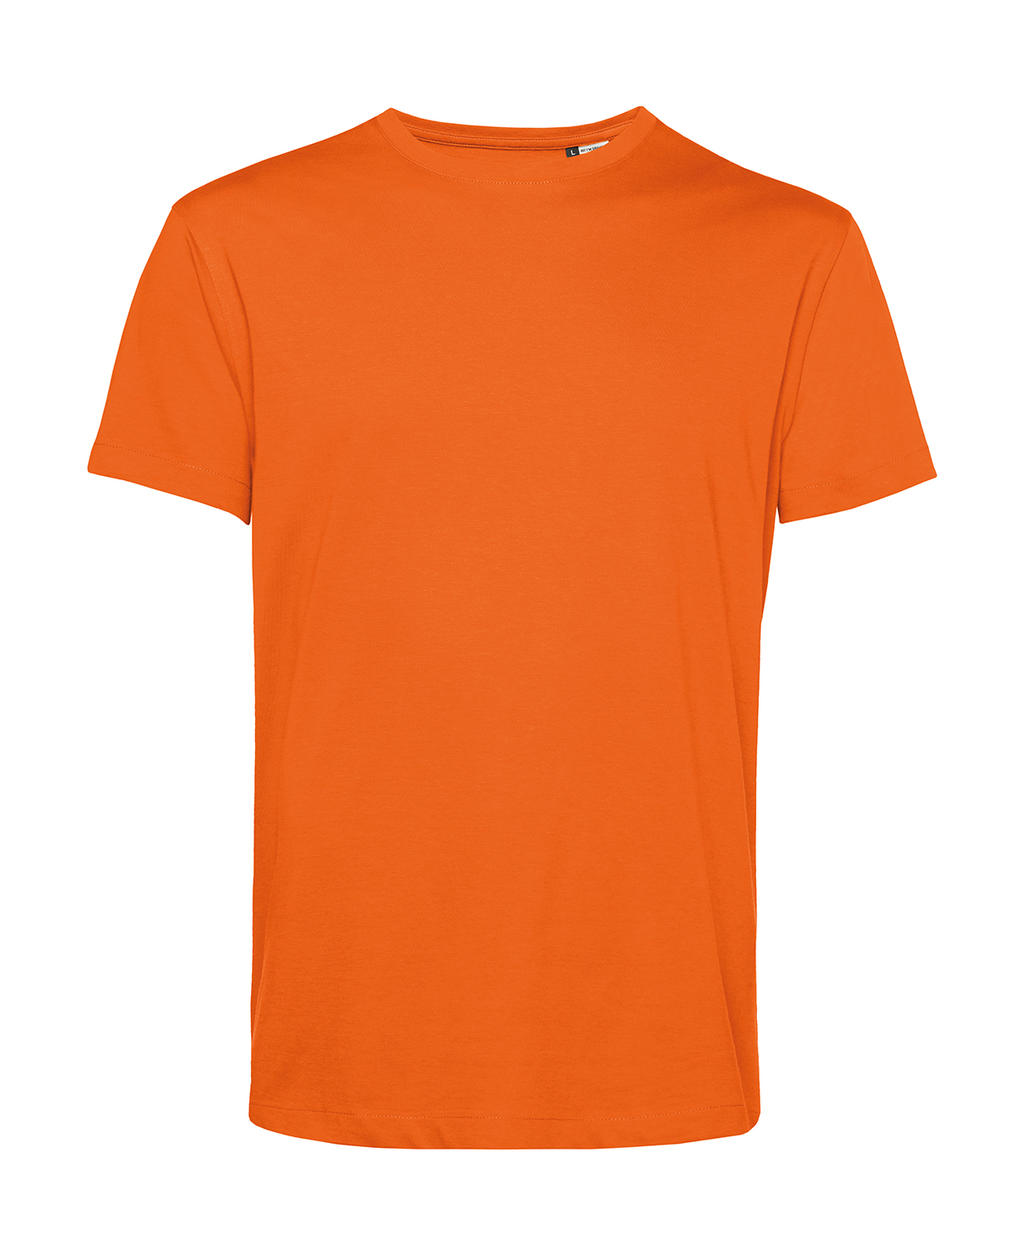 Tričko BC Organic Inspire E150 - oranžové, XL